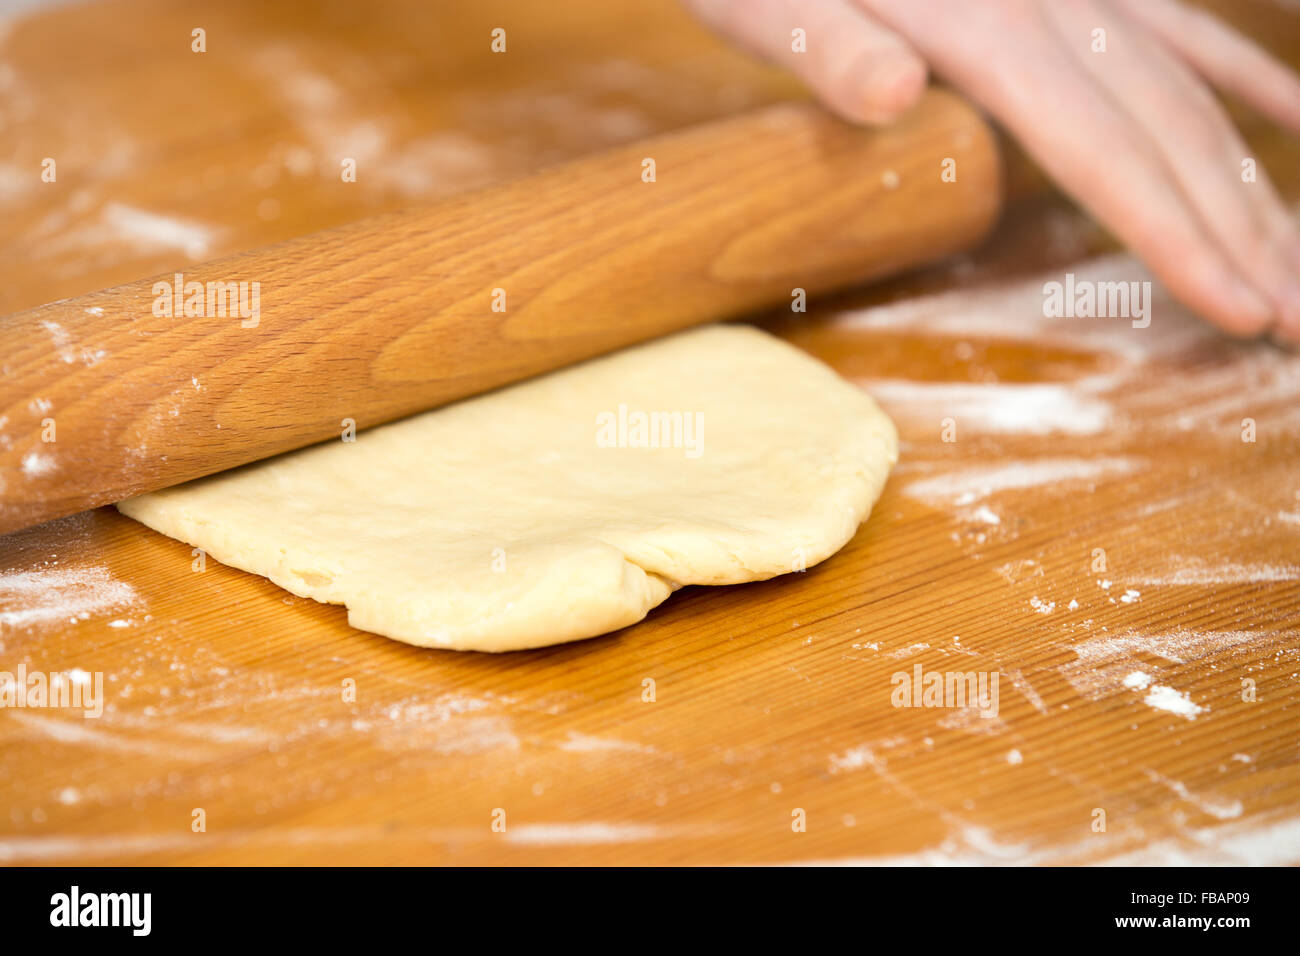 Chiudere la cucina casalinga, mani femminili stendete la pasta con pasta di legno rullo sul tavolo di legno ricoperti di farina Foto Stock